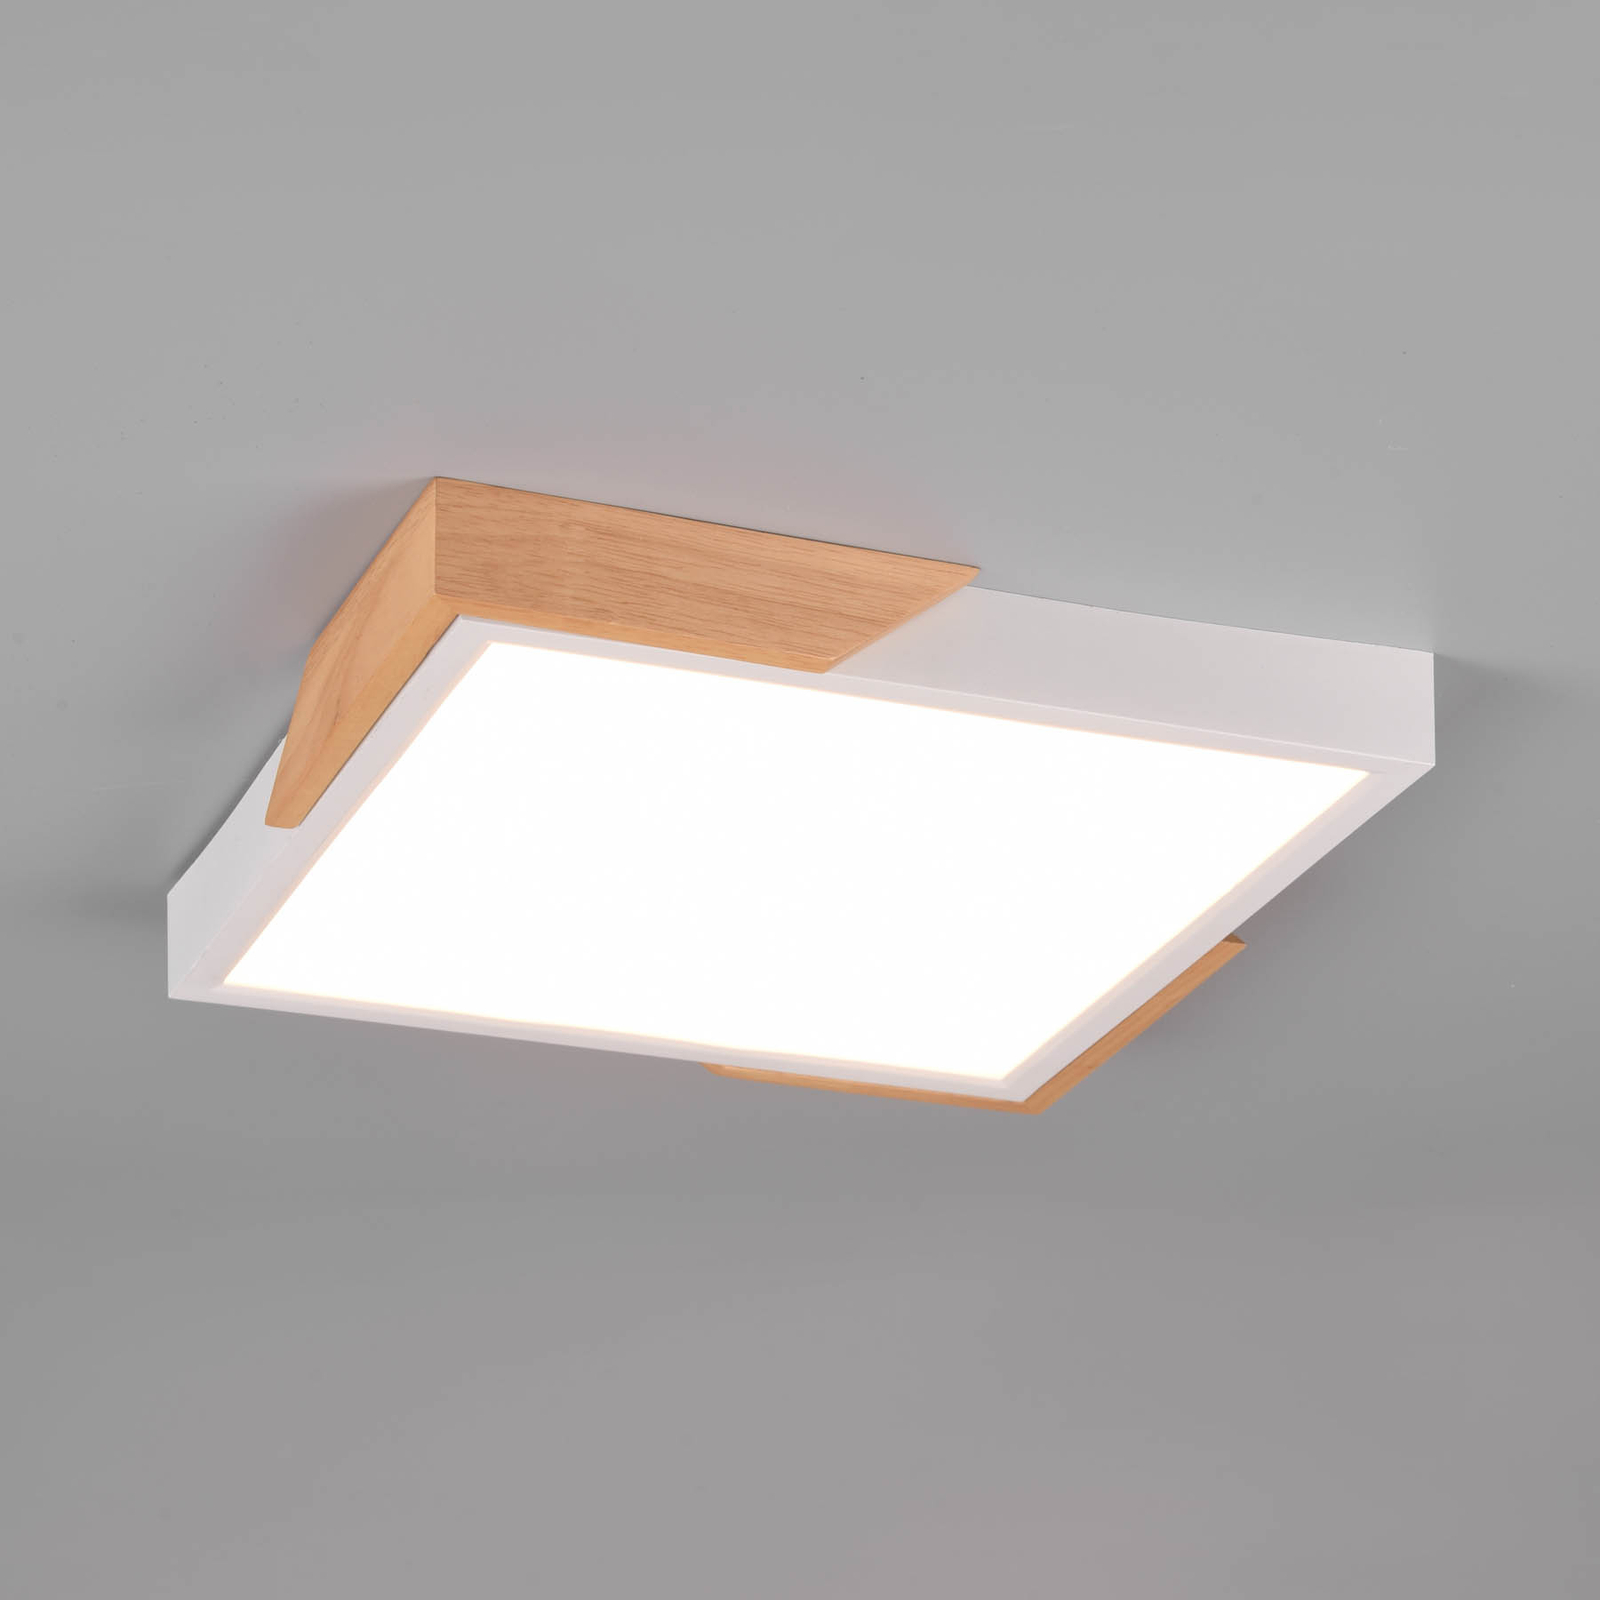 Meta LED φωτιστικό οροφής, 31.5x31.5cm, 3,000K, λευκό